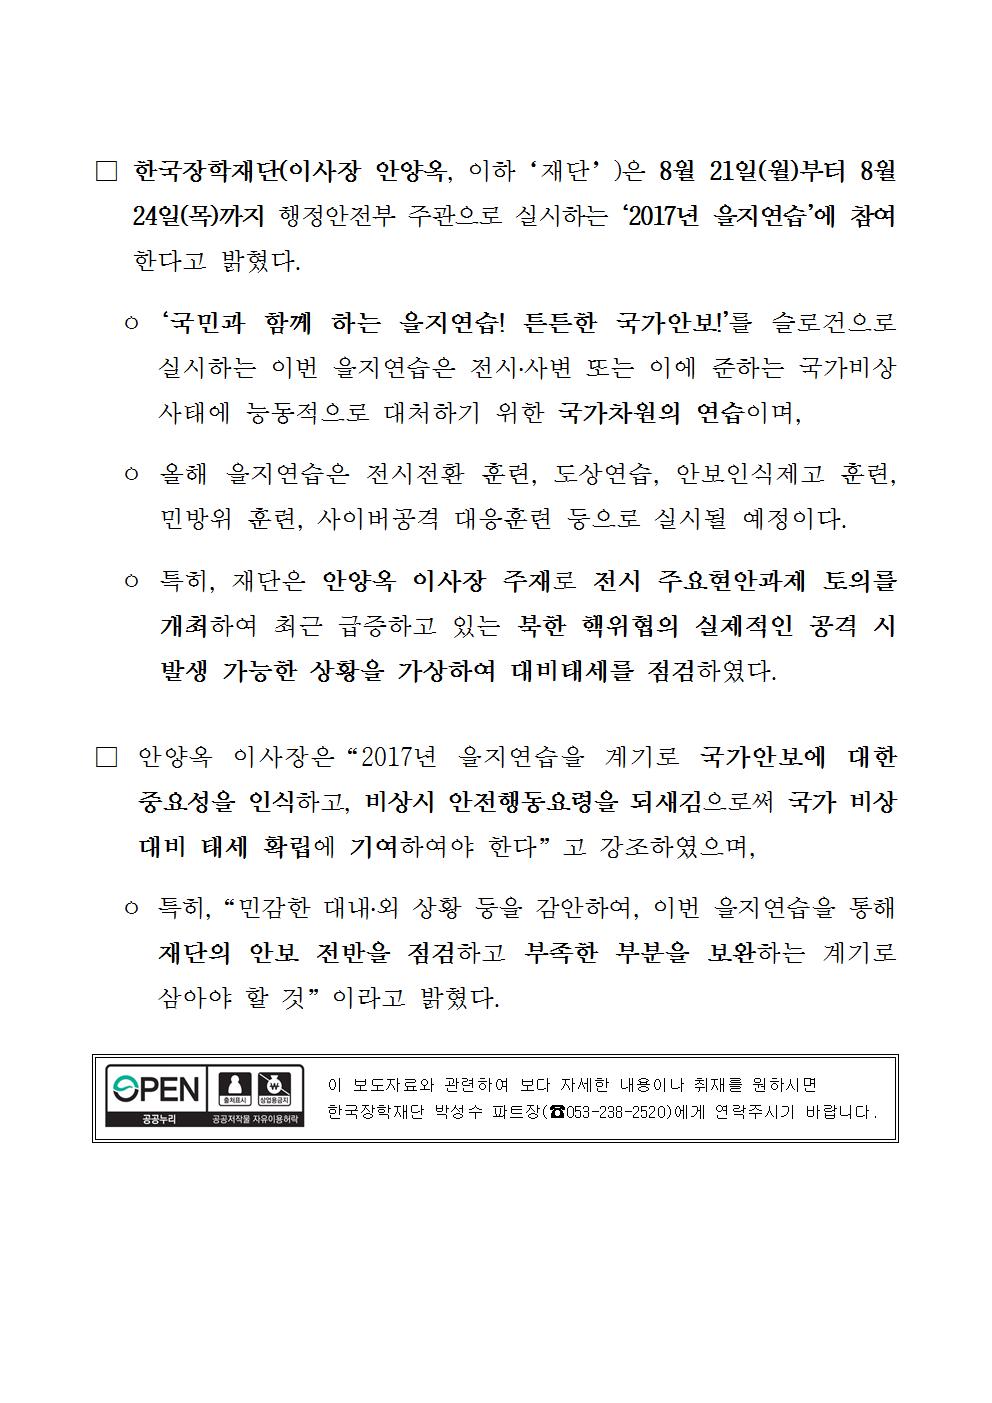 08-21(월)[보도자료] 한국장학재단, 2017년 을지연습 실시002.jpg